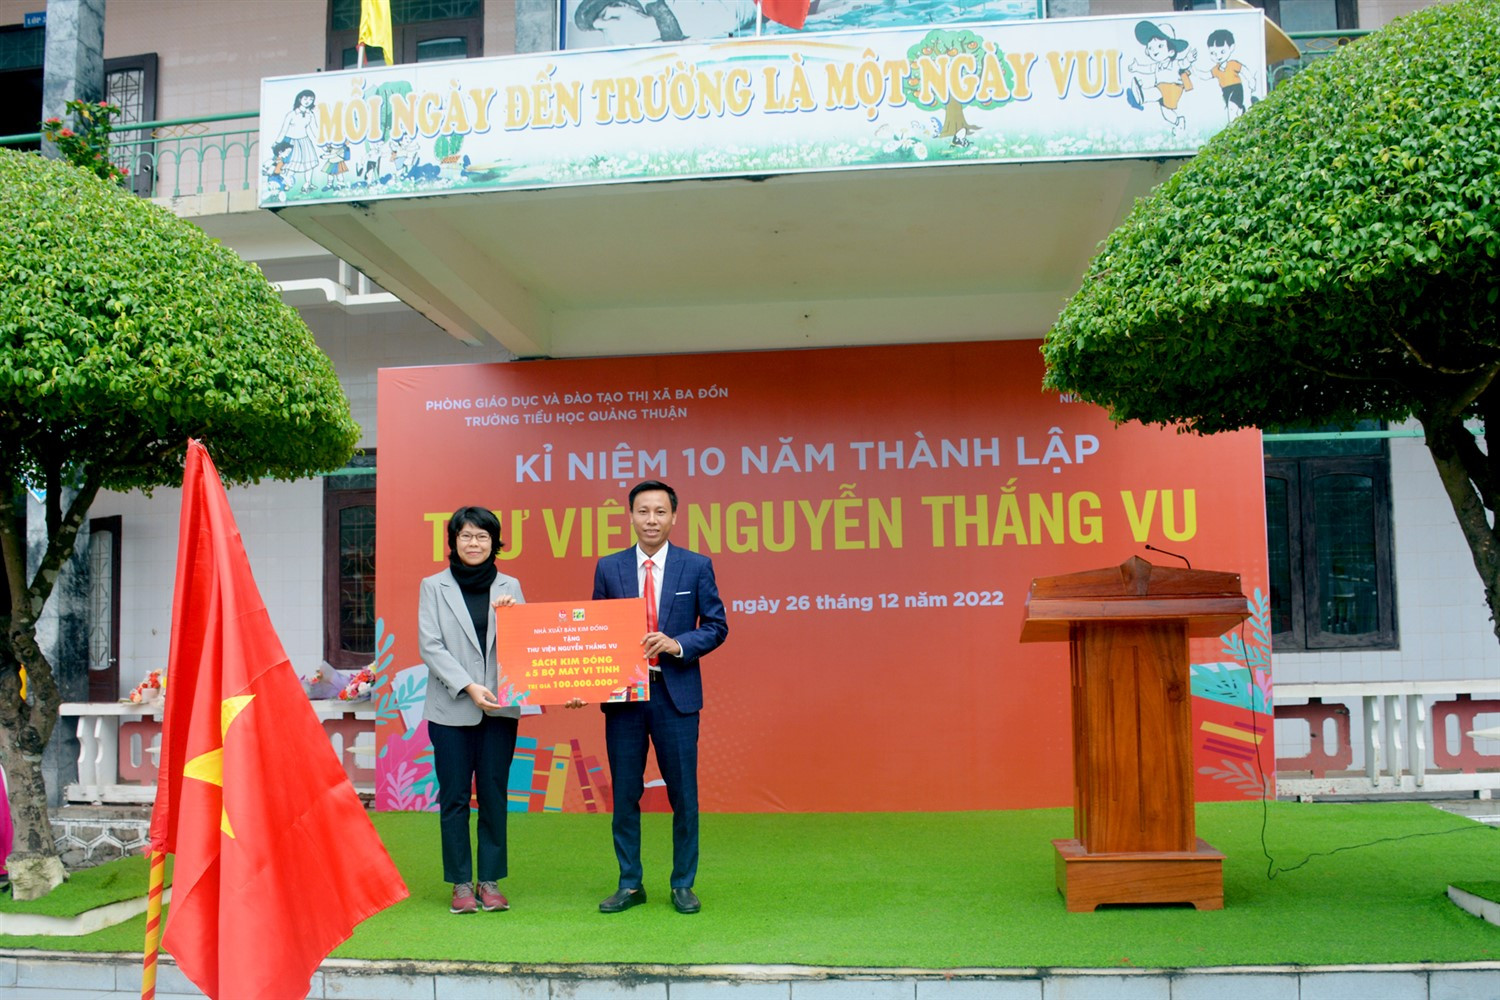 Thư viện Nguyễn Thắng Vu - Điểm sáng phát triển văn hóa đọc ở Quảng Bình - Ảnh 3.